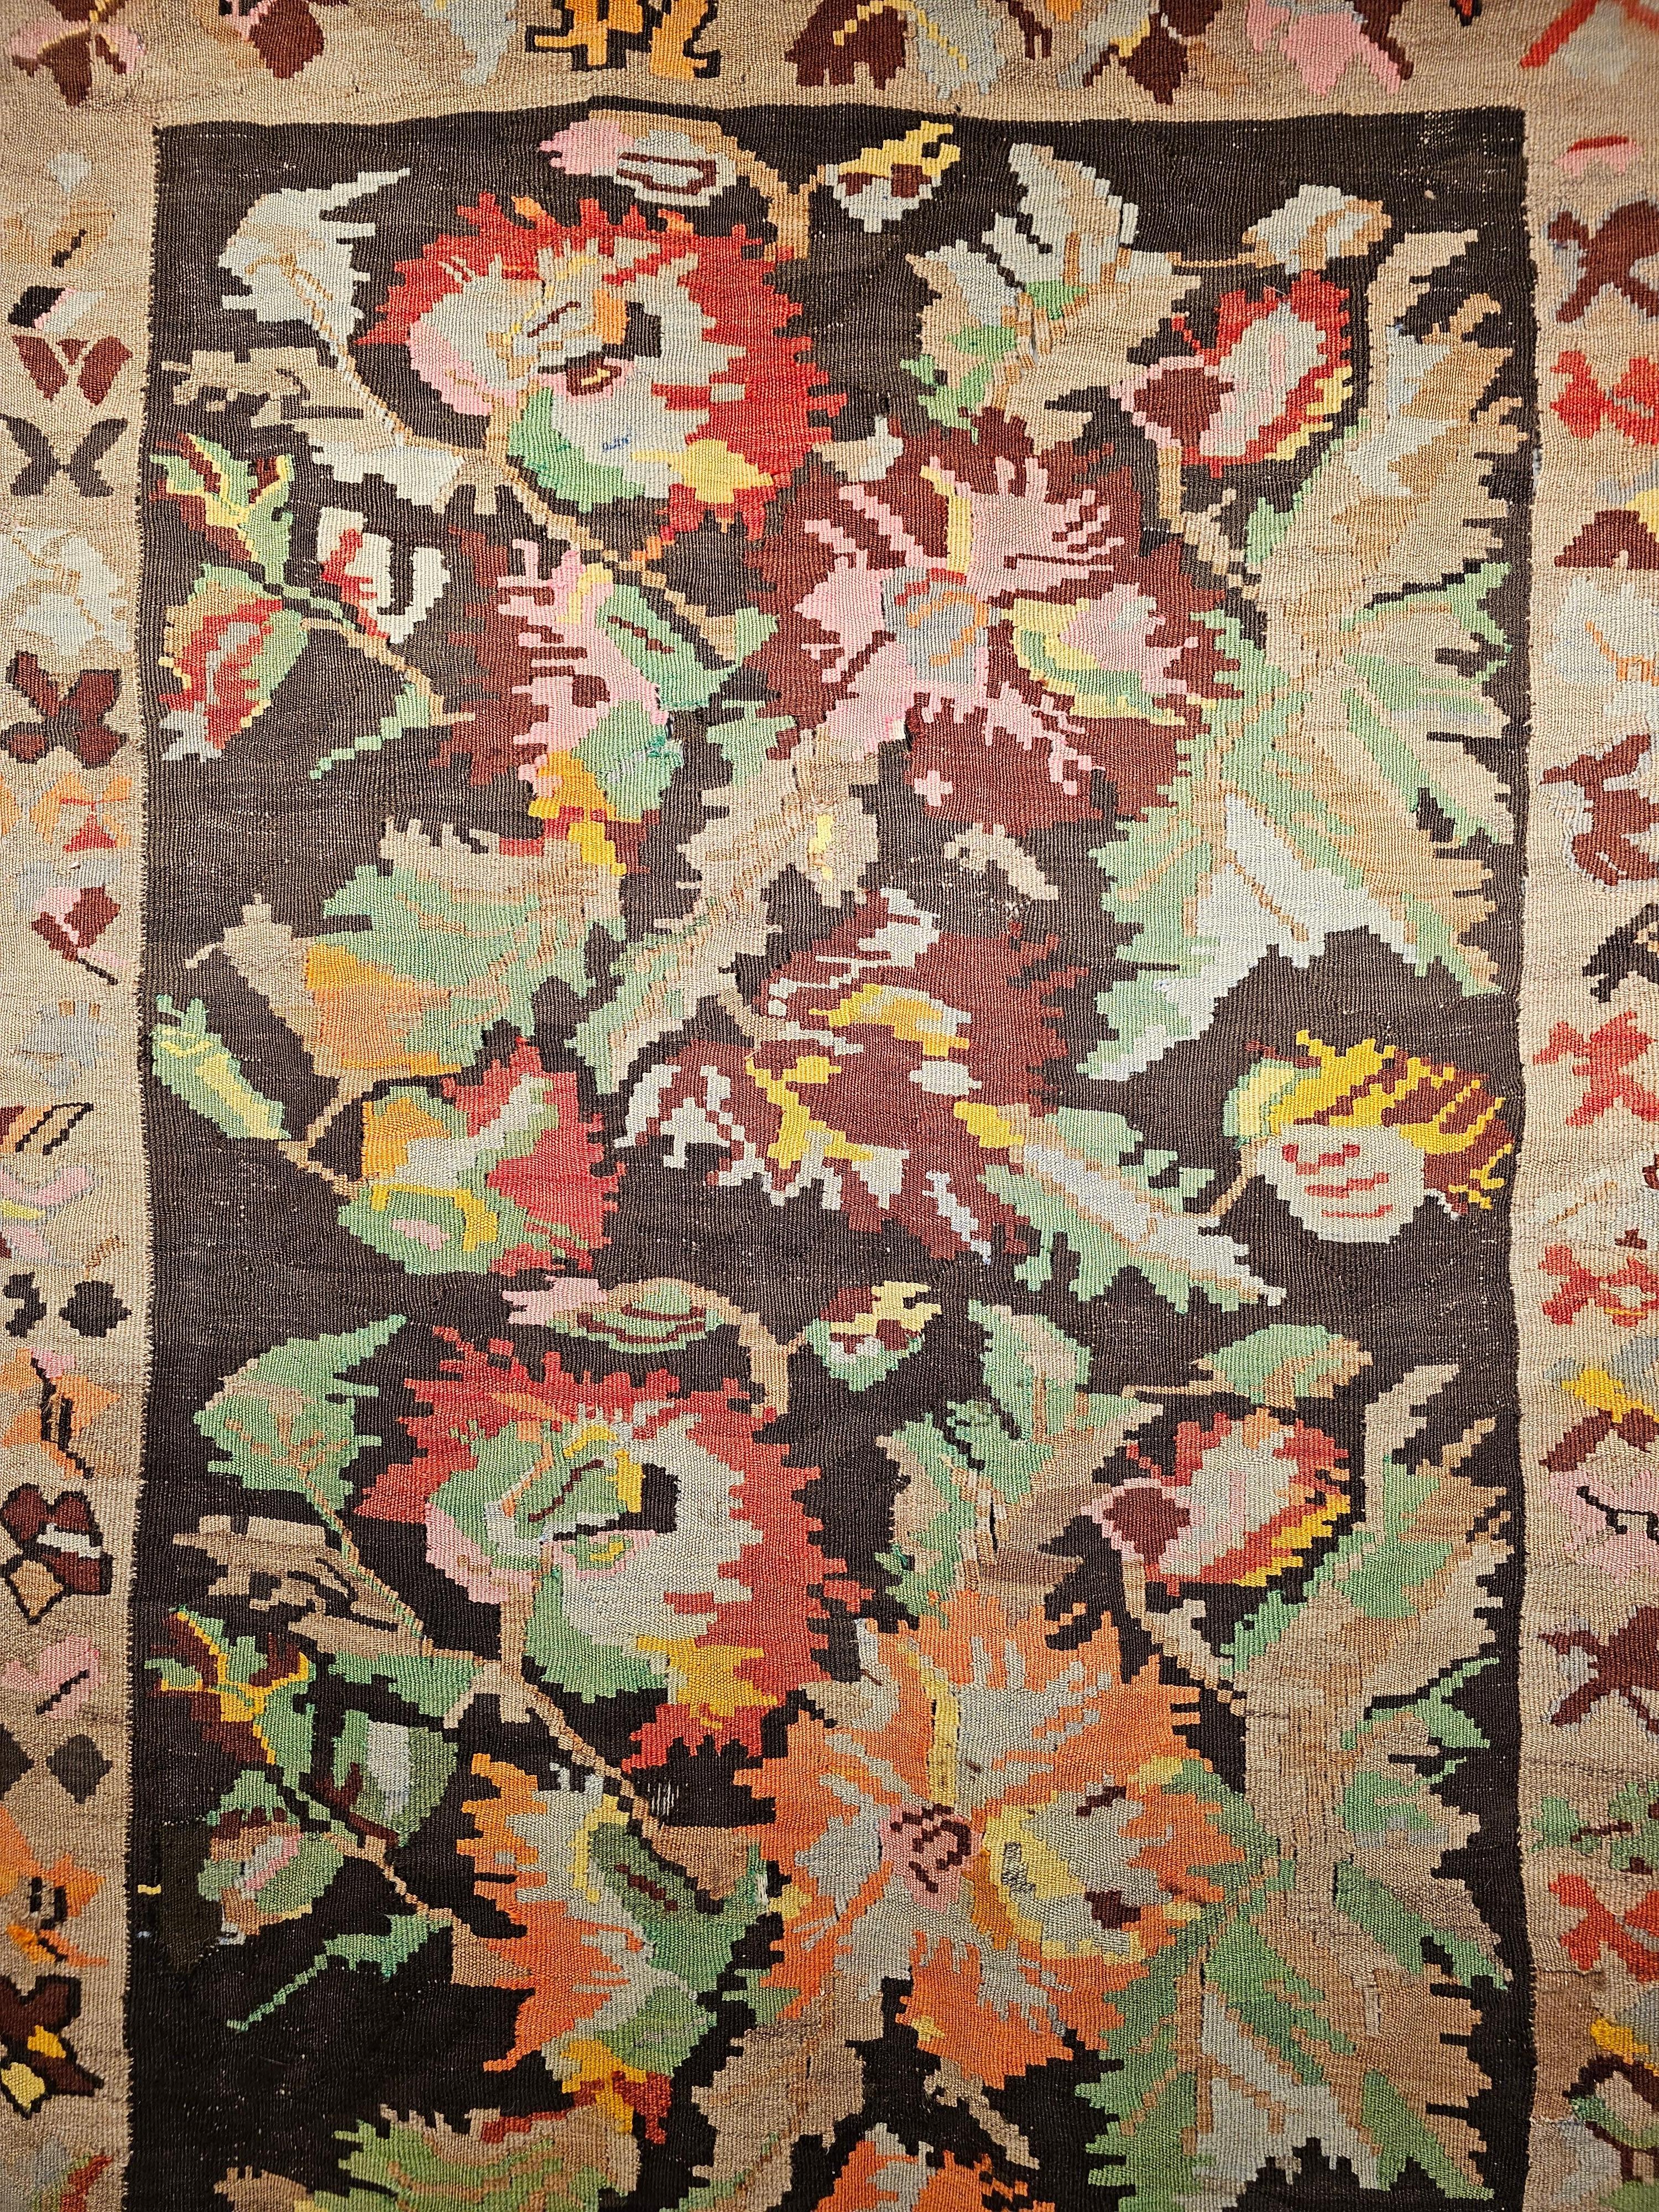 Chemin de table vintage en Kilim du Karabagh avec de grands designs floraux et des couleurs vibrantes, datant du début des années 1900. Le chemin de table en kilim présente des couleurs vives et magnifiques, utilisées dans les trois bouquets de